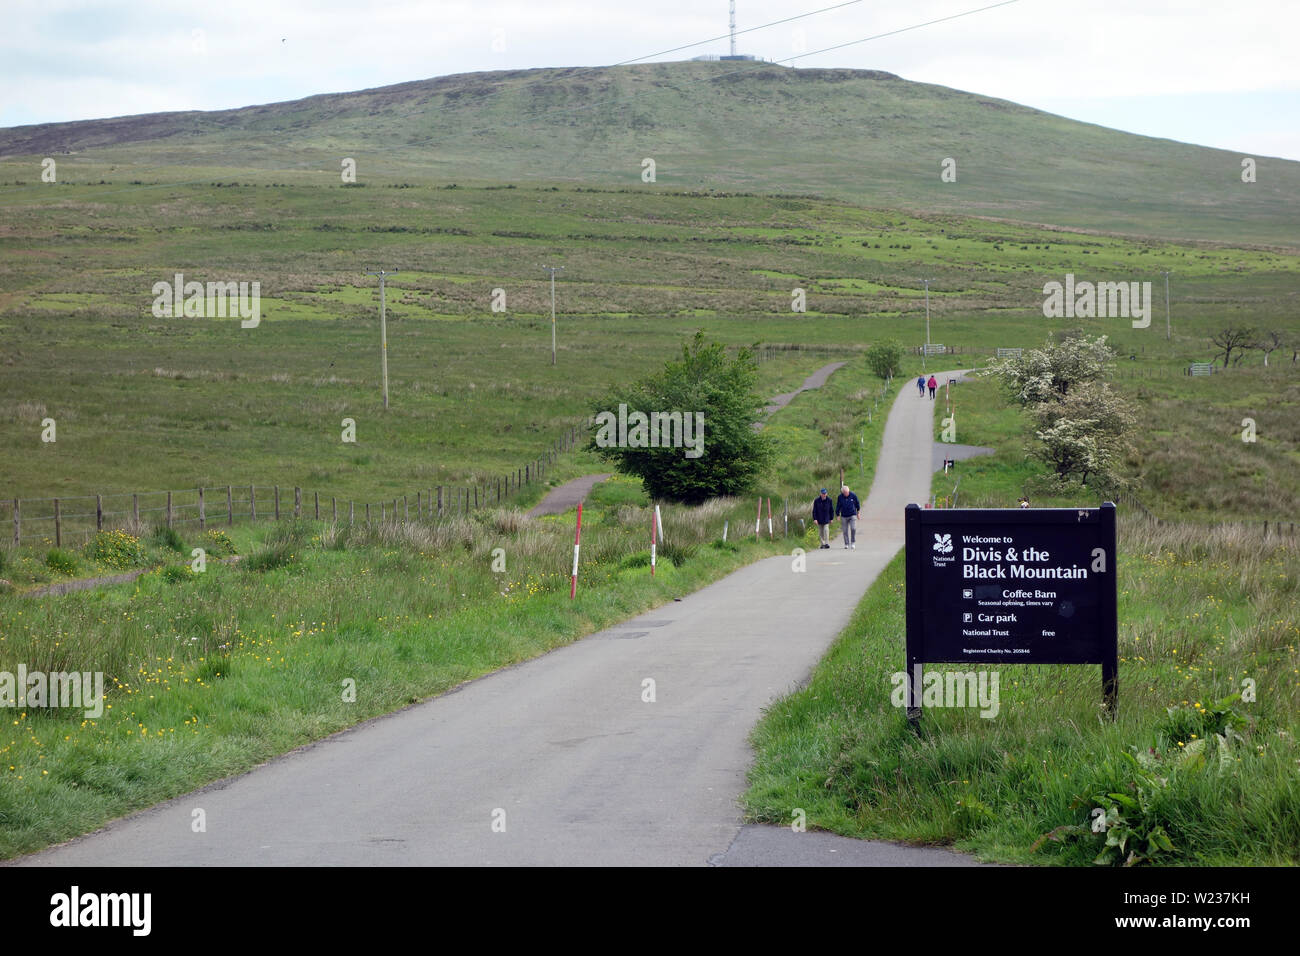 Menschen zu Fuß durch die Holz- Zeichen für die Divis & Black Mountain Trails in der Nähe von Belfast in County Antrim, Nordirland, Großbritannien. Stockfoto